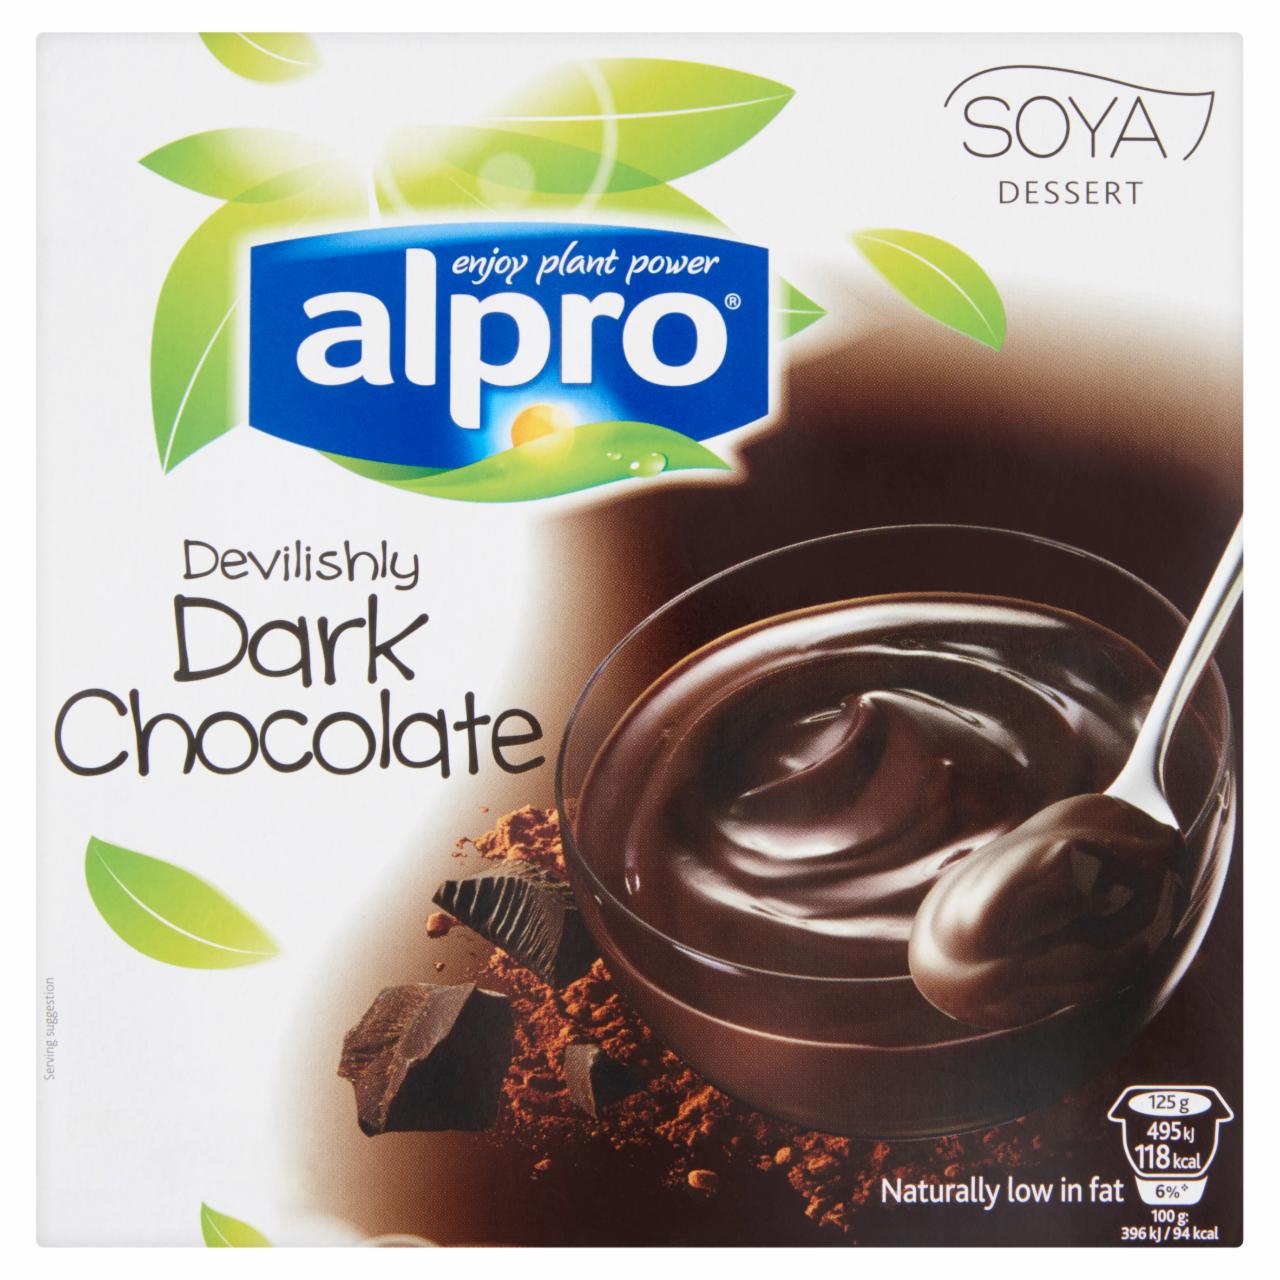 Képek - Alpro étcsokoládé ízű szója desszert, kalciummal és vitaminokkal dúsítva 4 x 125 g